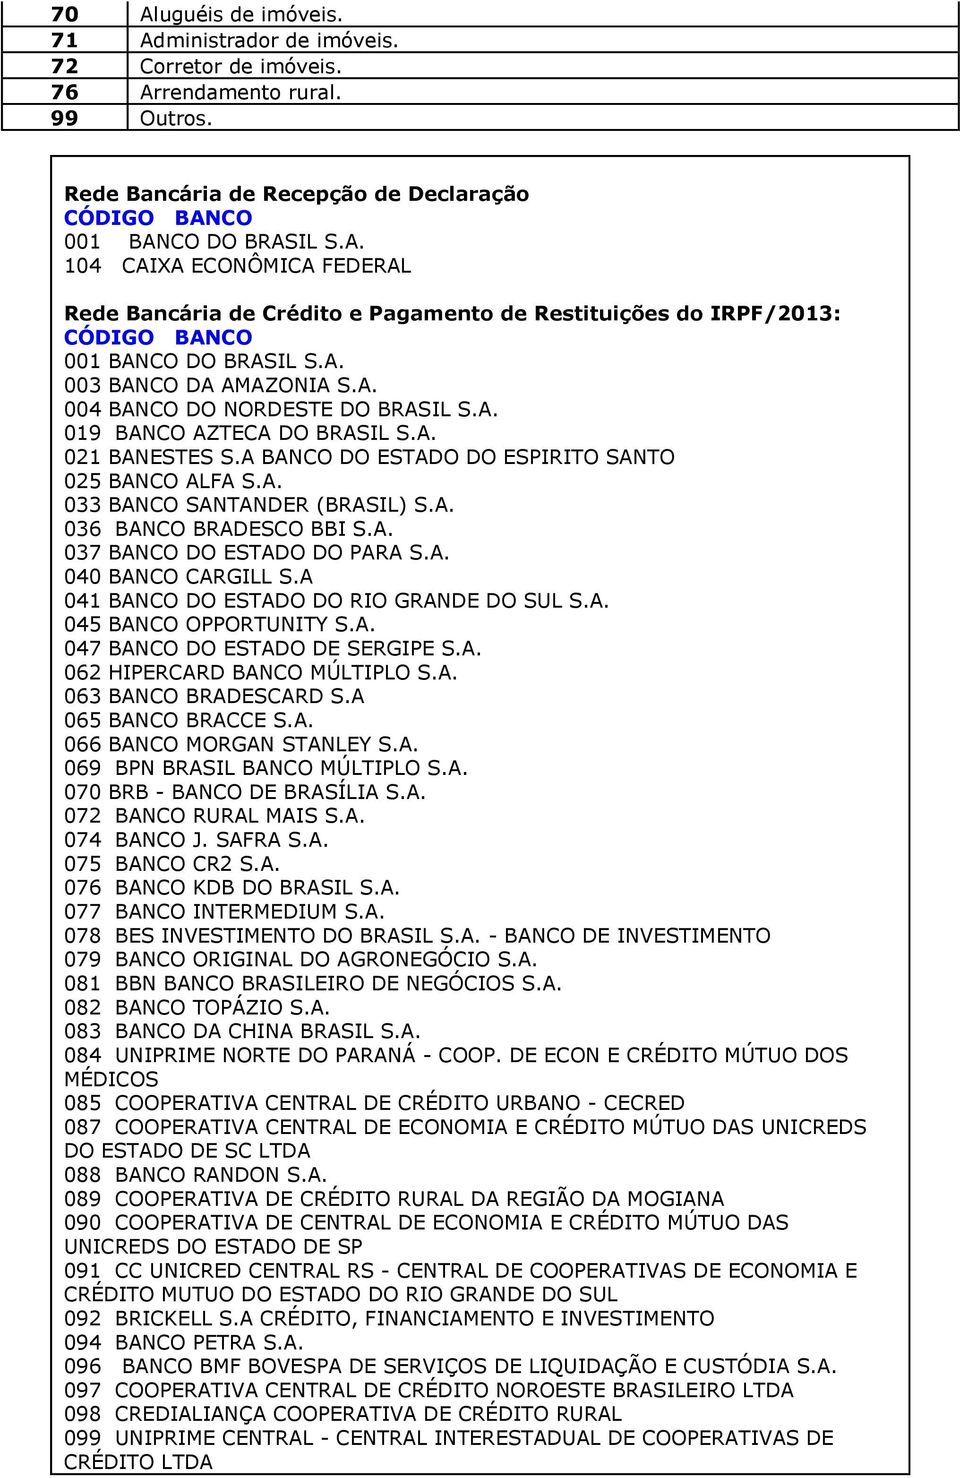 A. 036 BANCO BRADESCO BBI S.A. 037 BANCO DO ESTADO DO PARA S.A. 040 BANCO CARGILL S.A 041 BANCO DO ESTADO DO RIO GRANDE DO SUL S.A. 045 BANCO OPPORTUNITY S.A. 047 BANCO DO ESTADO DE SERGIPE S.A. 062 HIPERCARD BANCO MÚLTIPLO S.